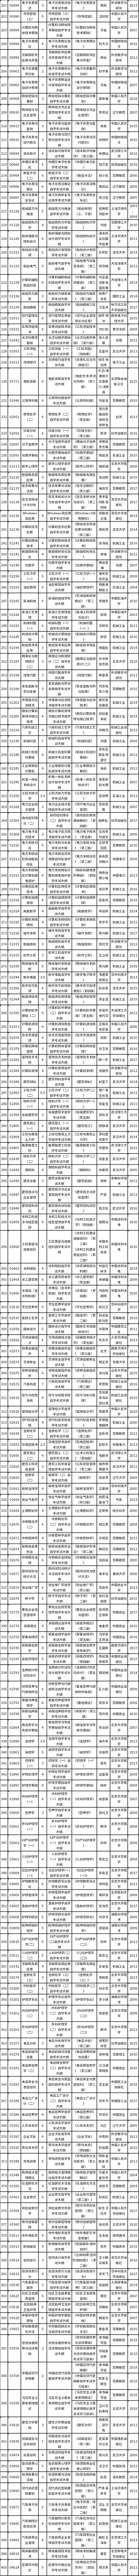 湖北省高等教育自学考试2022年下半年暨2022年上半年延期考试课程教材大纲及使用情况